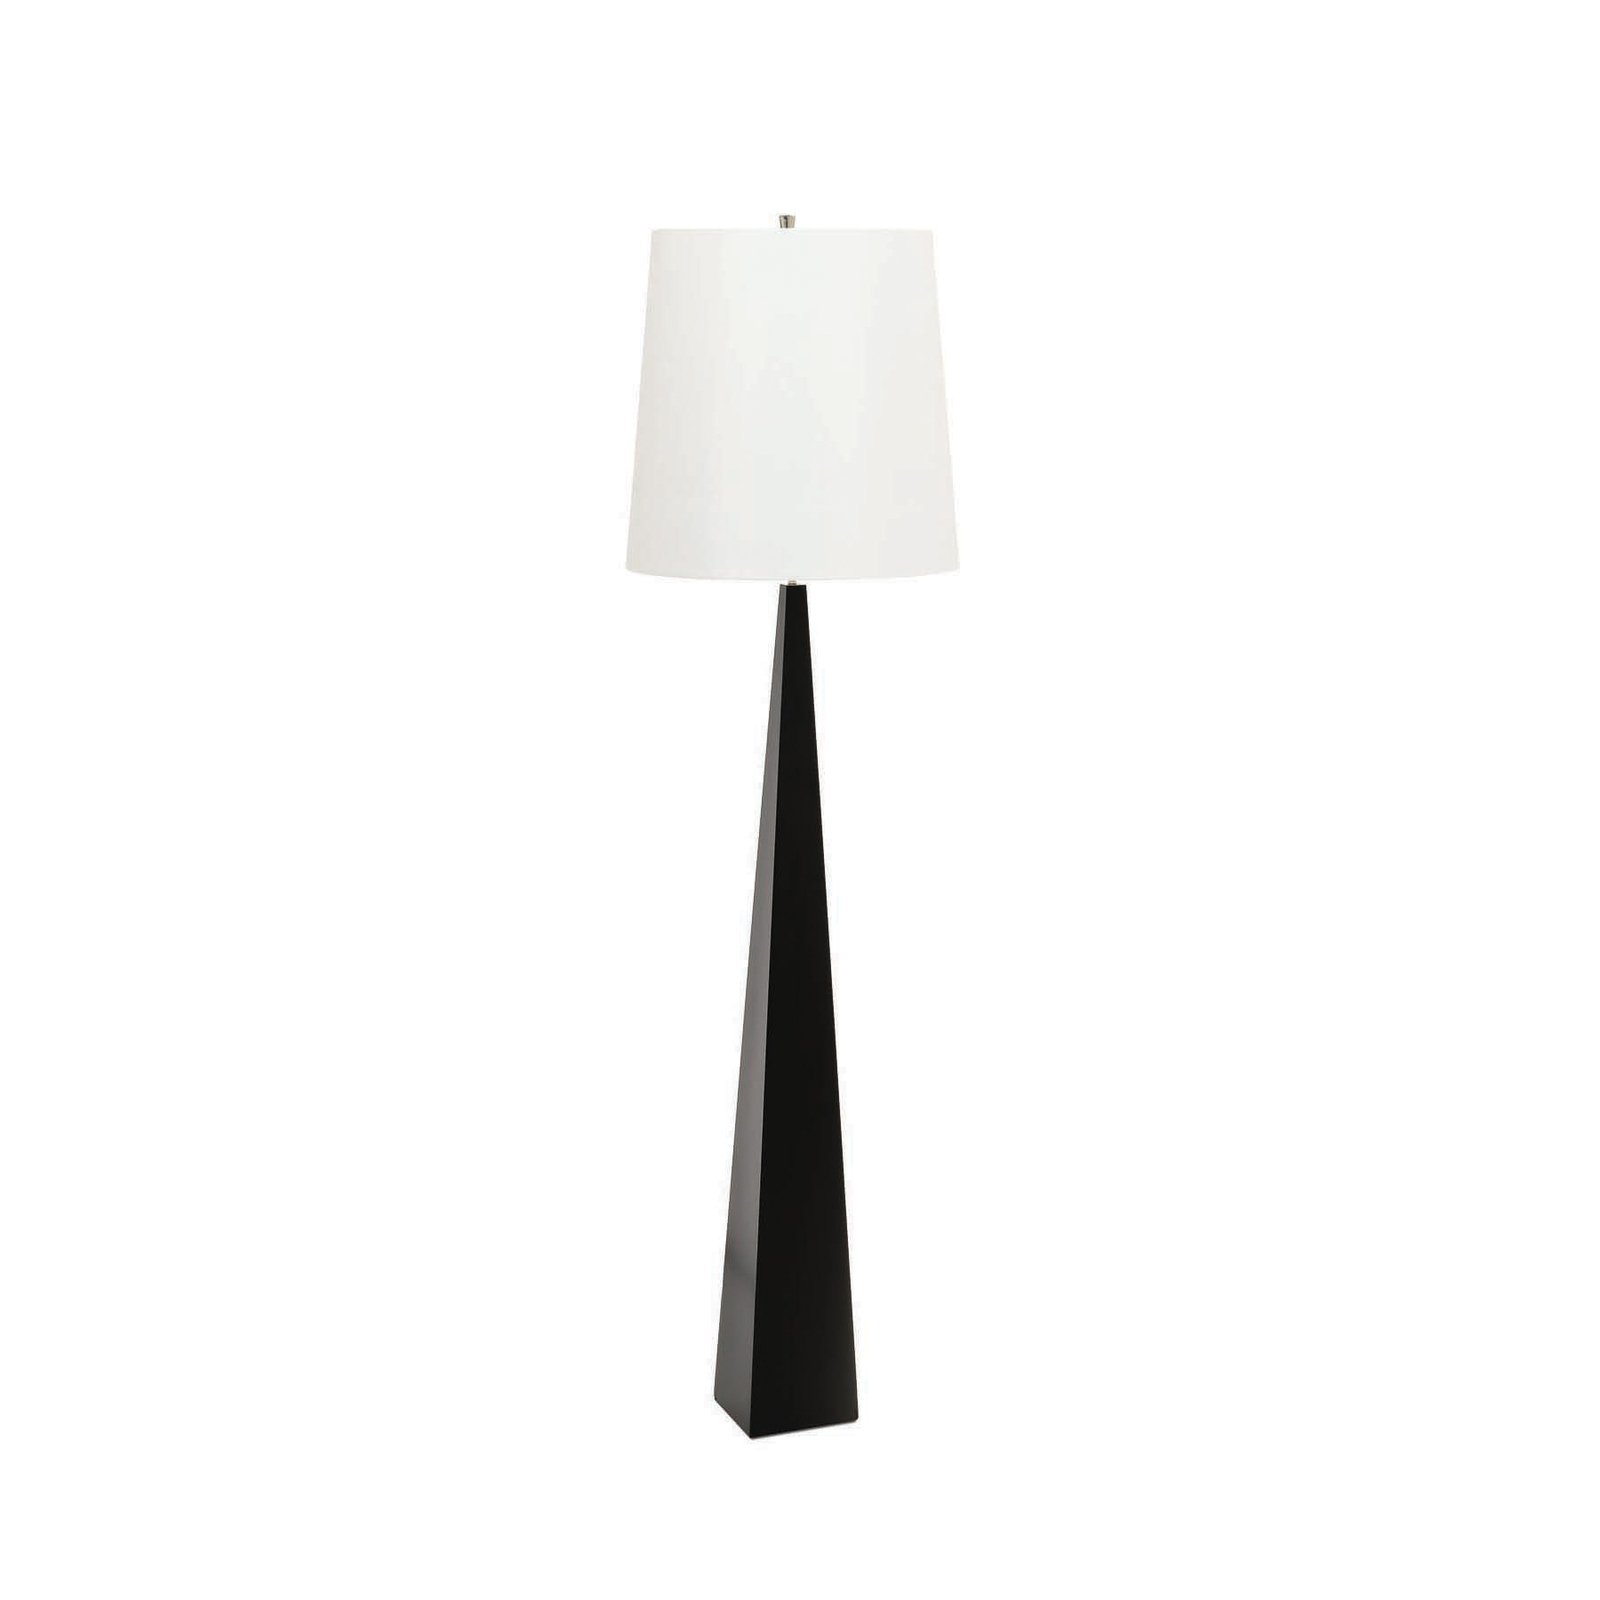 Lampa stojąca Ascent, czarna, biały klosz